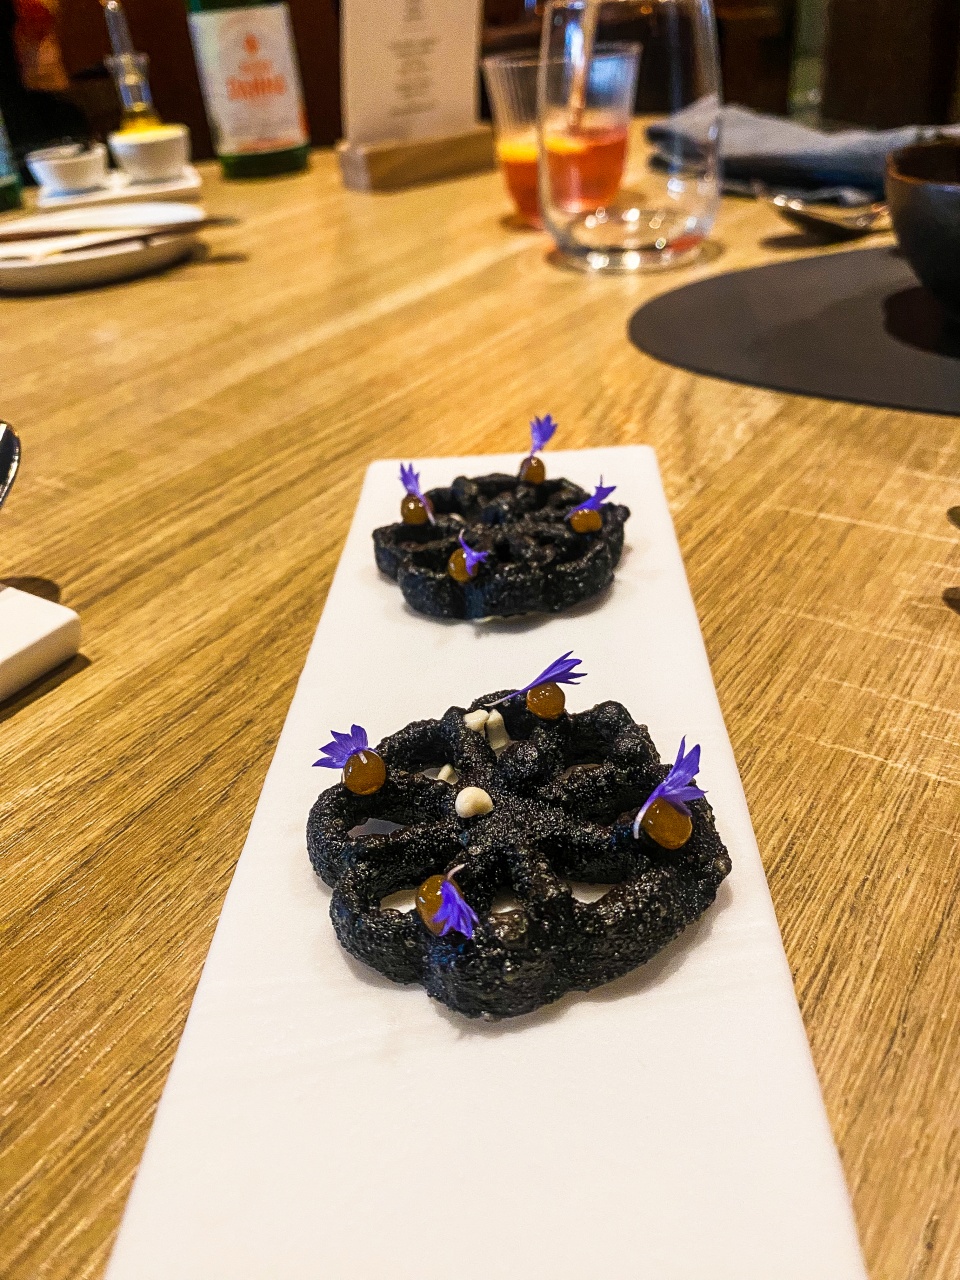 Een knapperige buñuelo, rijkelijk gevuld met gerookte oosterschelde paling en kombu, gepresenteerd op een verfijnd bord, weerspiegelt de culinaire creativiteit van Restaurant Zappaz in Leuven